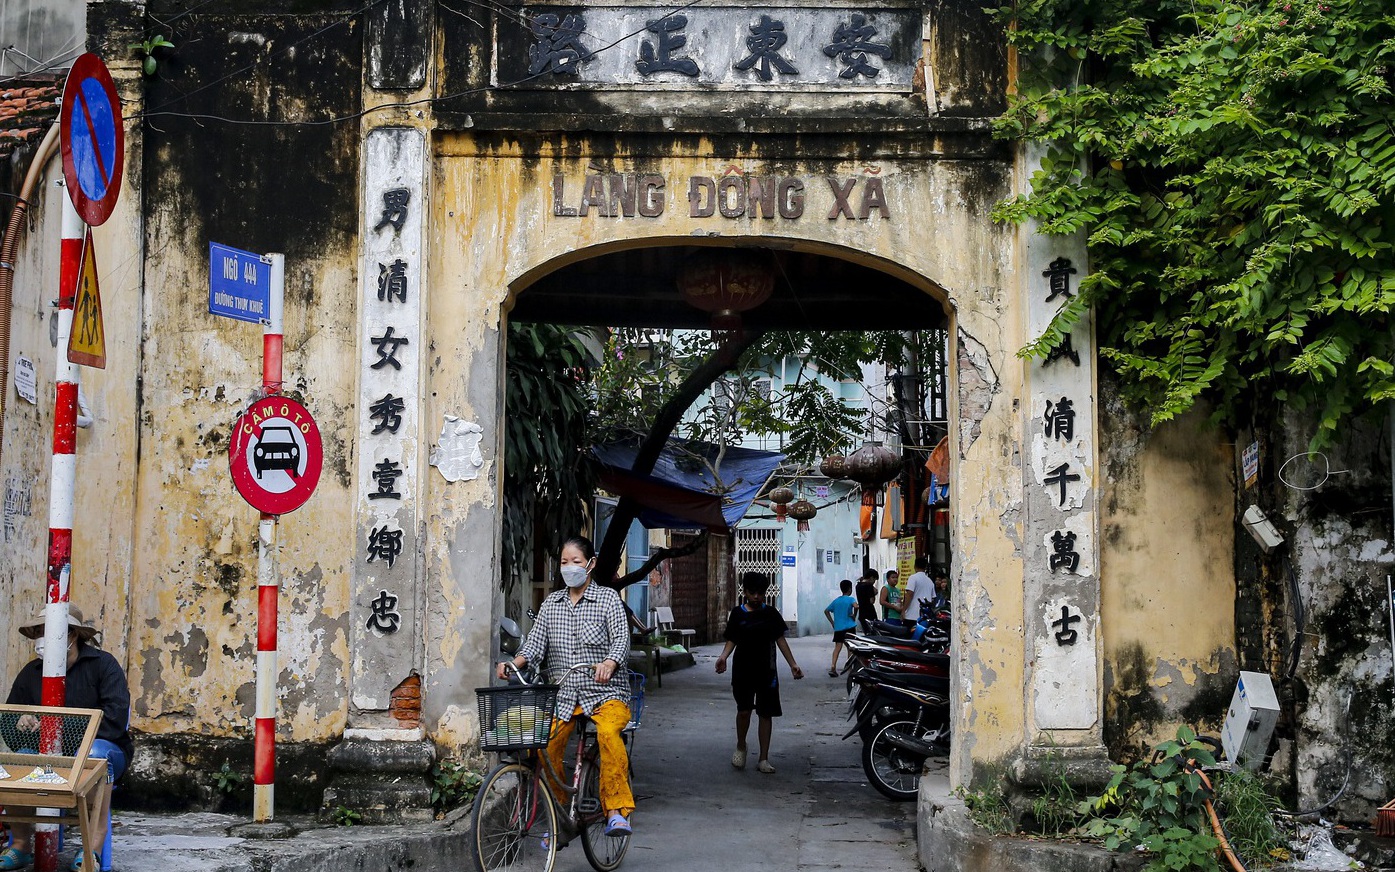 Con phố cứ đi vài chục mét lại có cổng, đình làng ở Hà Nội